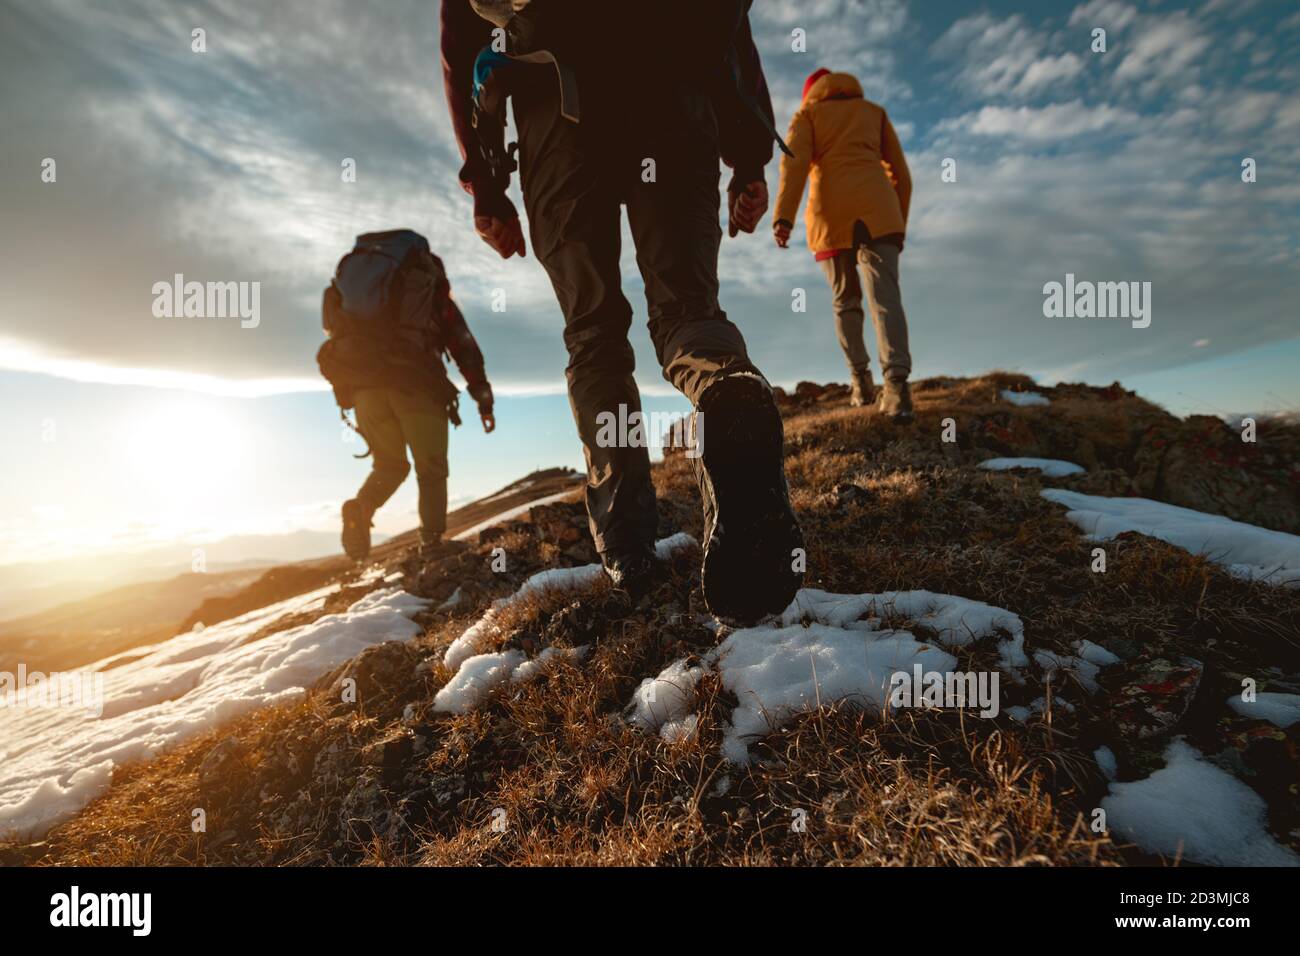 Un pequeño grupo de turistas camina en la cima de la montaña al atardecer. Foto de primer plano Foto de stock